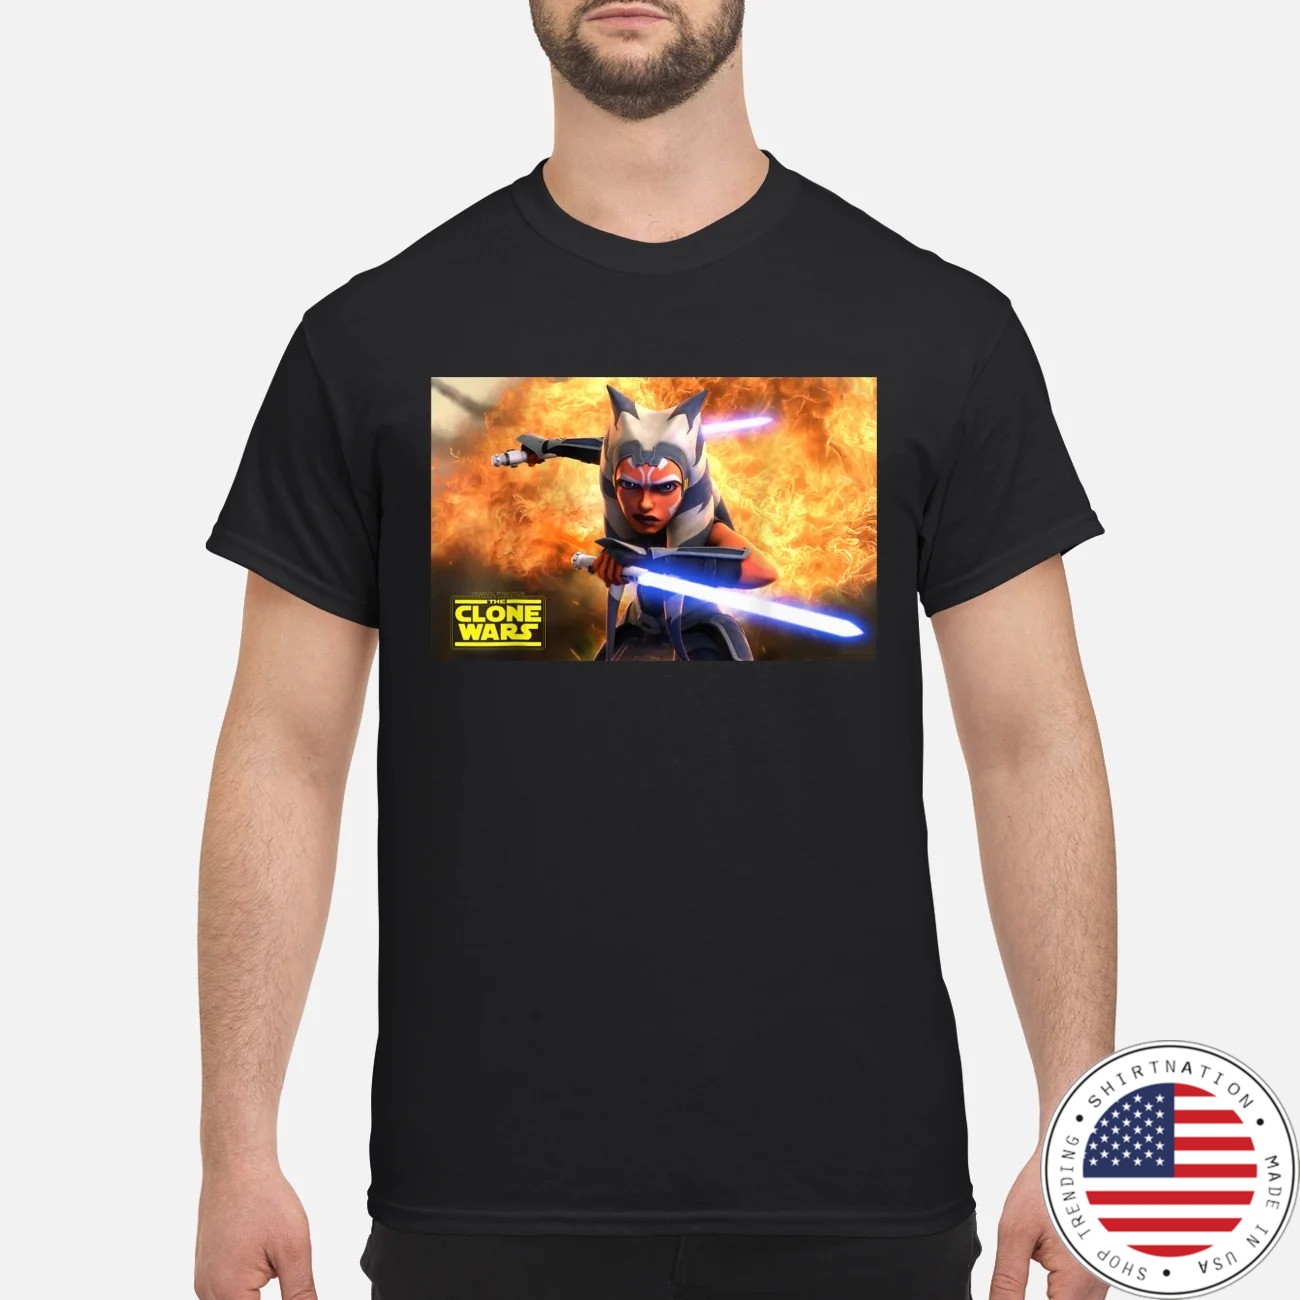 Star war the clone war shirt